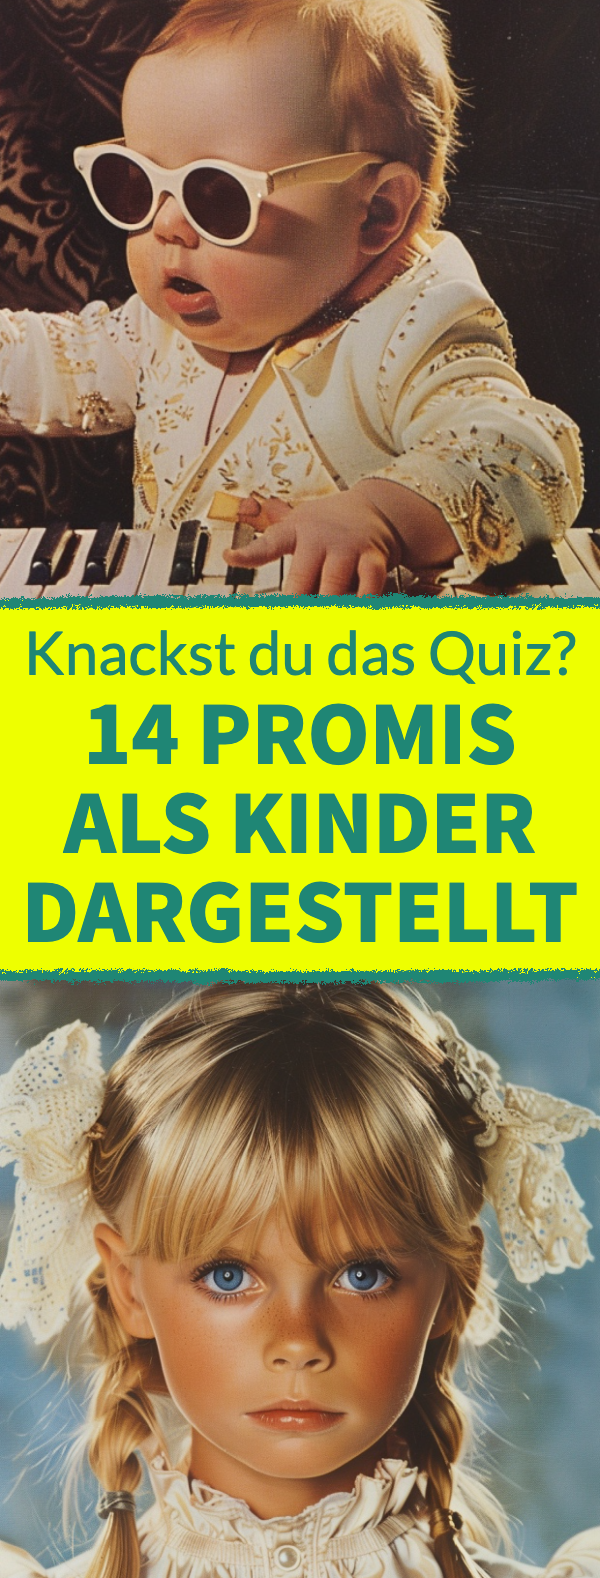 Diese 14 Promis wurden als Kinder dargestellt. Knackst du das Quiz?